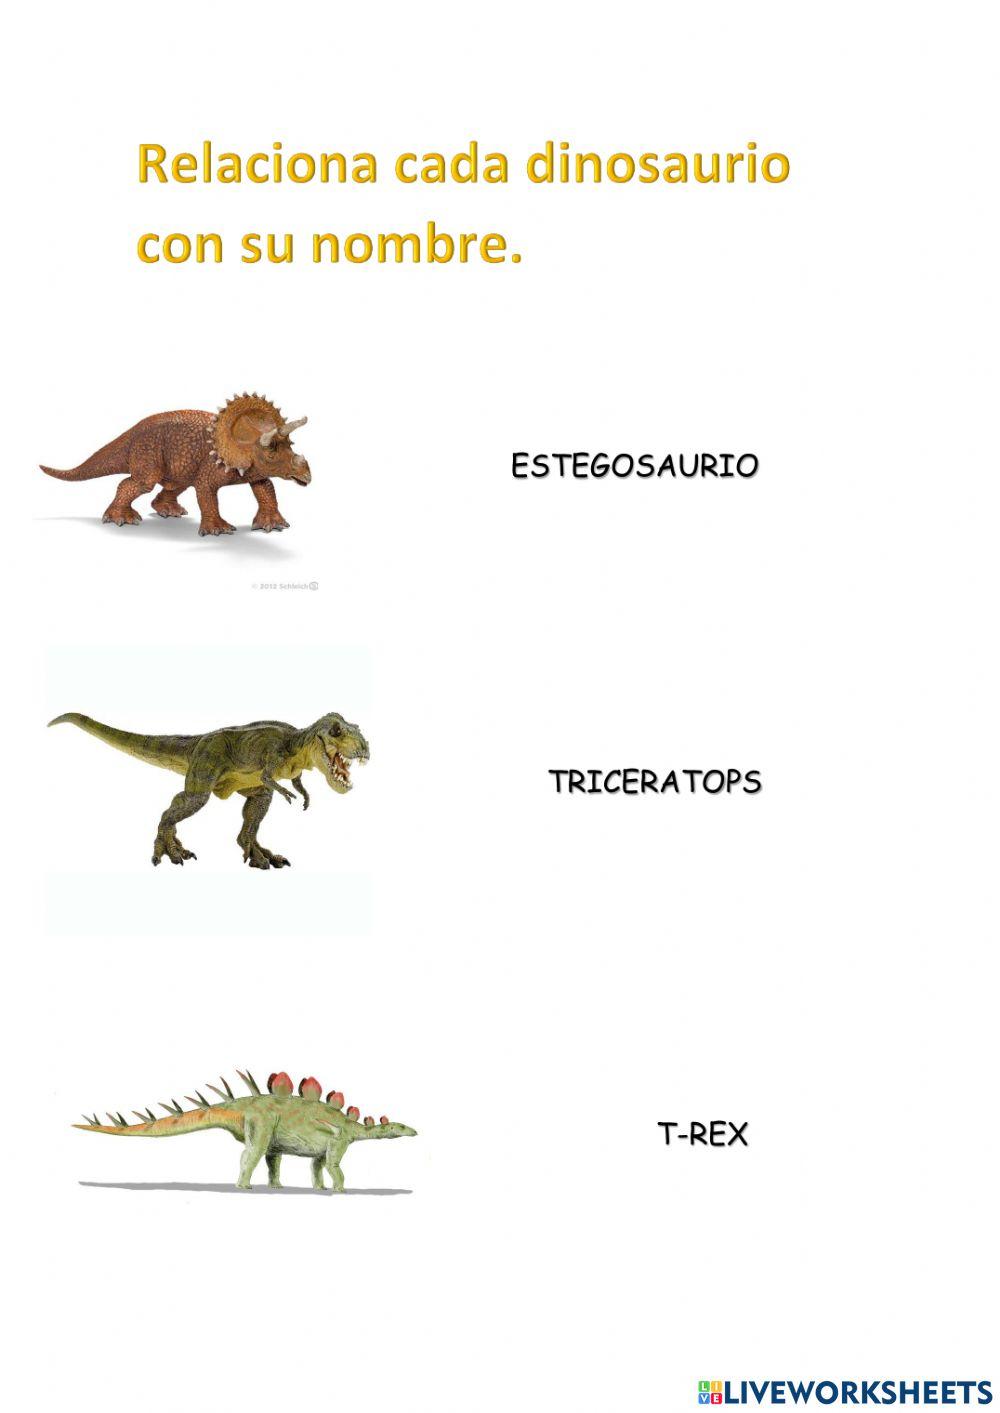 Relaciona cada dinosaurio con su nombre